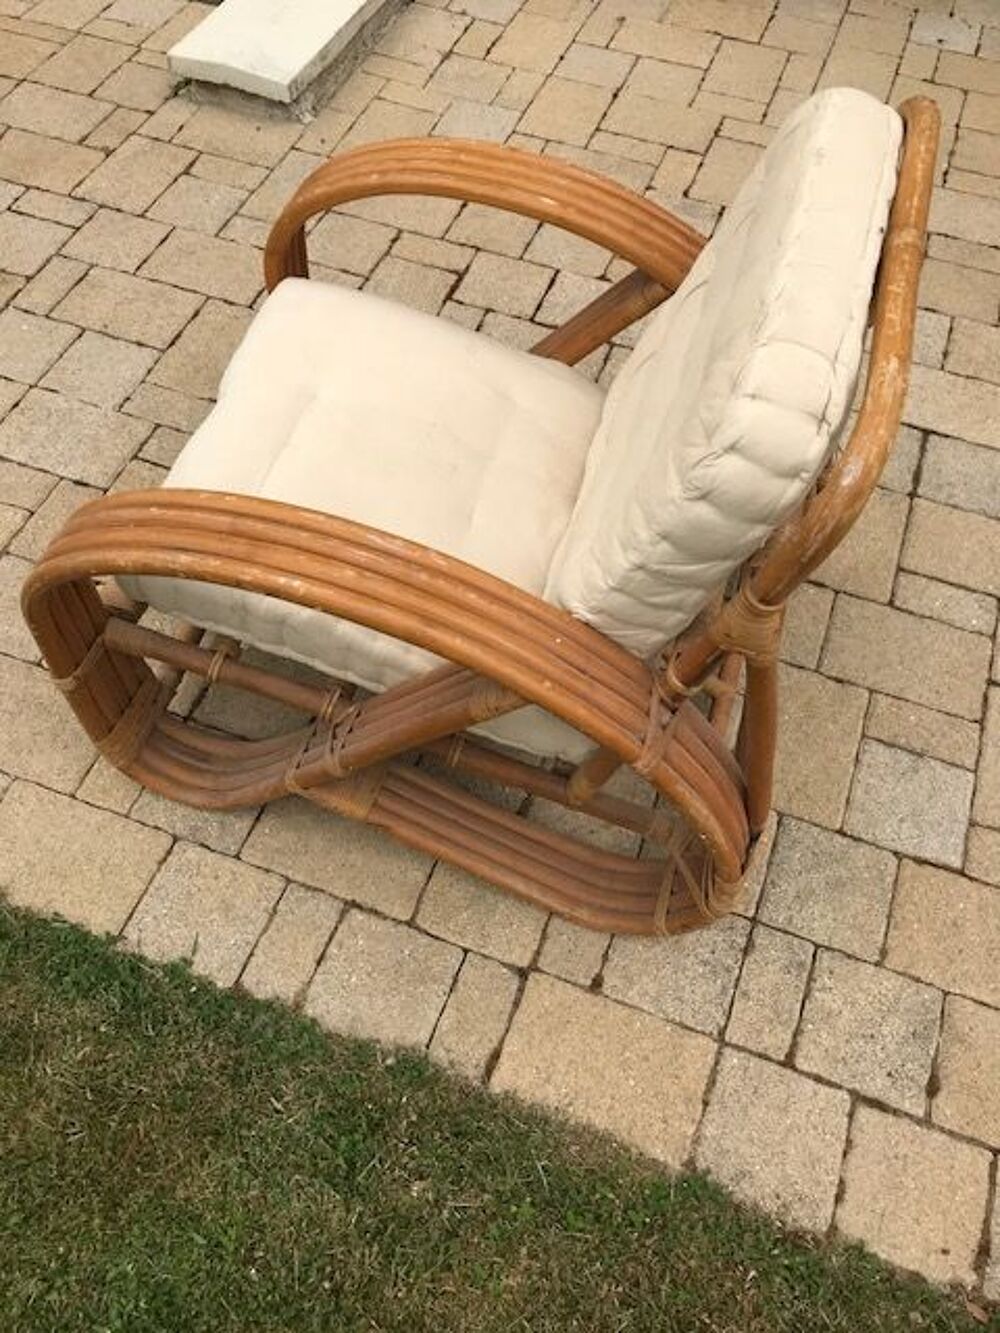 2 x fauteuils en bambou / rotin Meubles